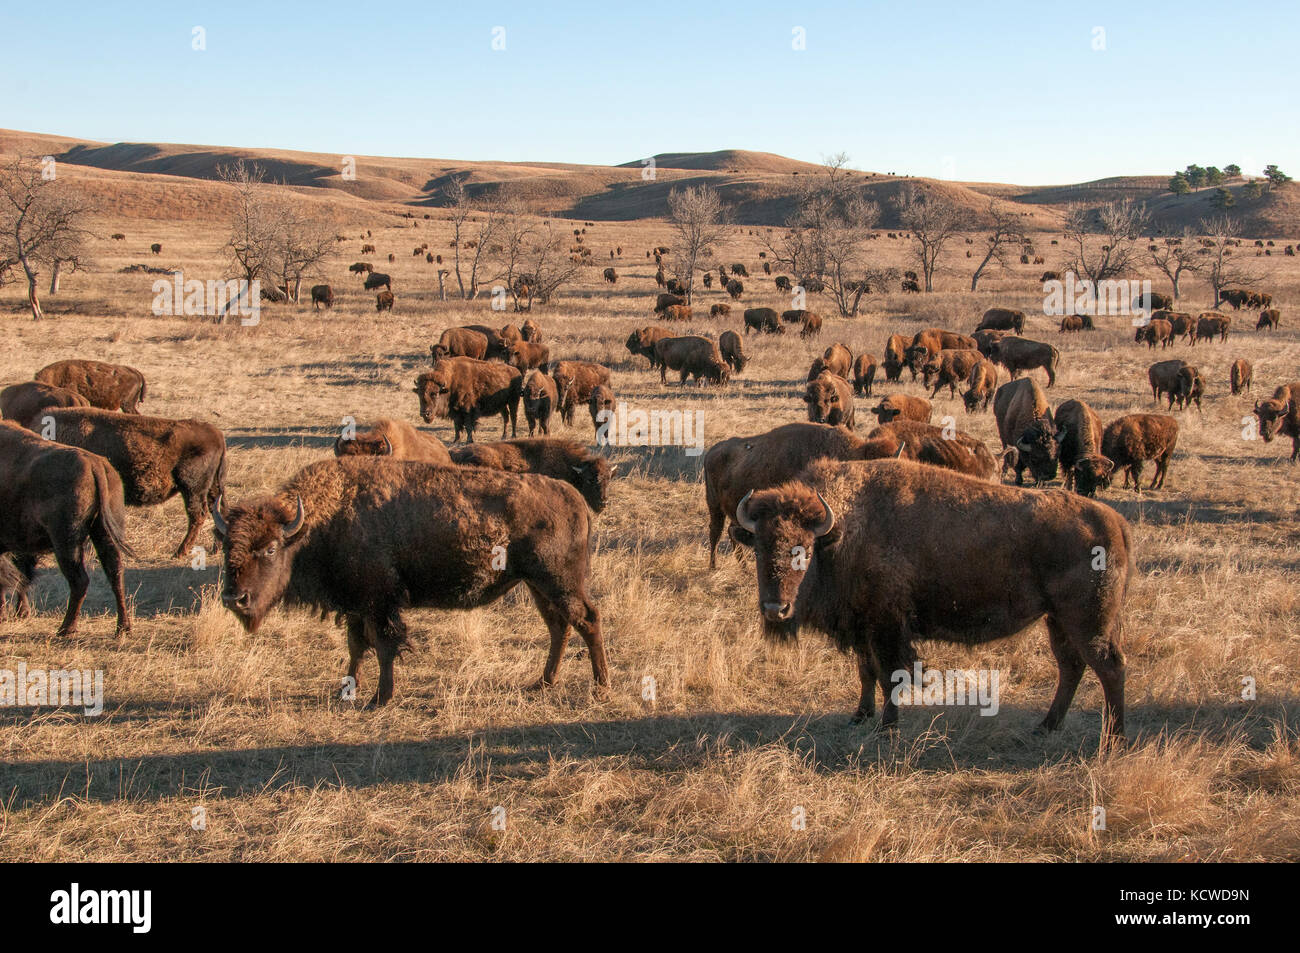 Le troupeau de bisons des prairies. (Bison bison), Wind Cave Nat'l Park, Dakota du Sud, à la fin de l'automne, USA Banque D'Images